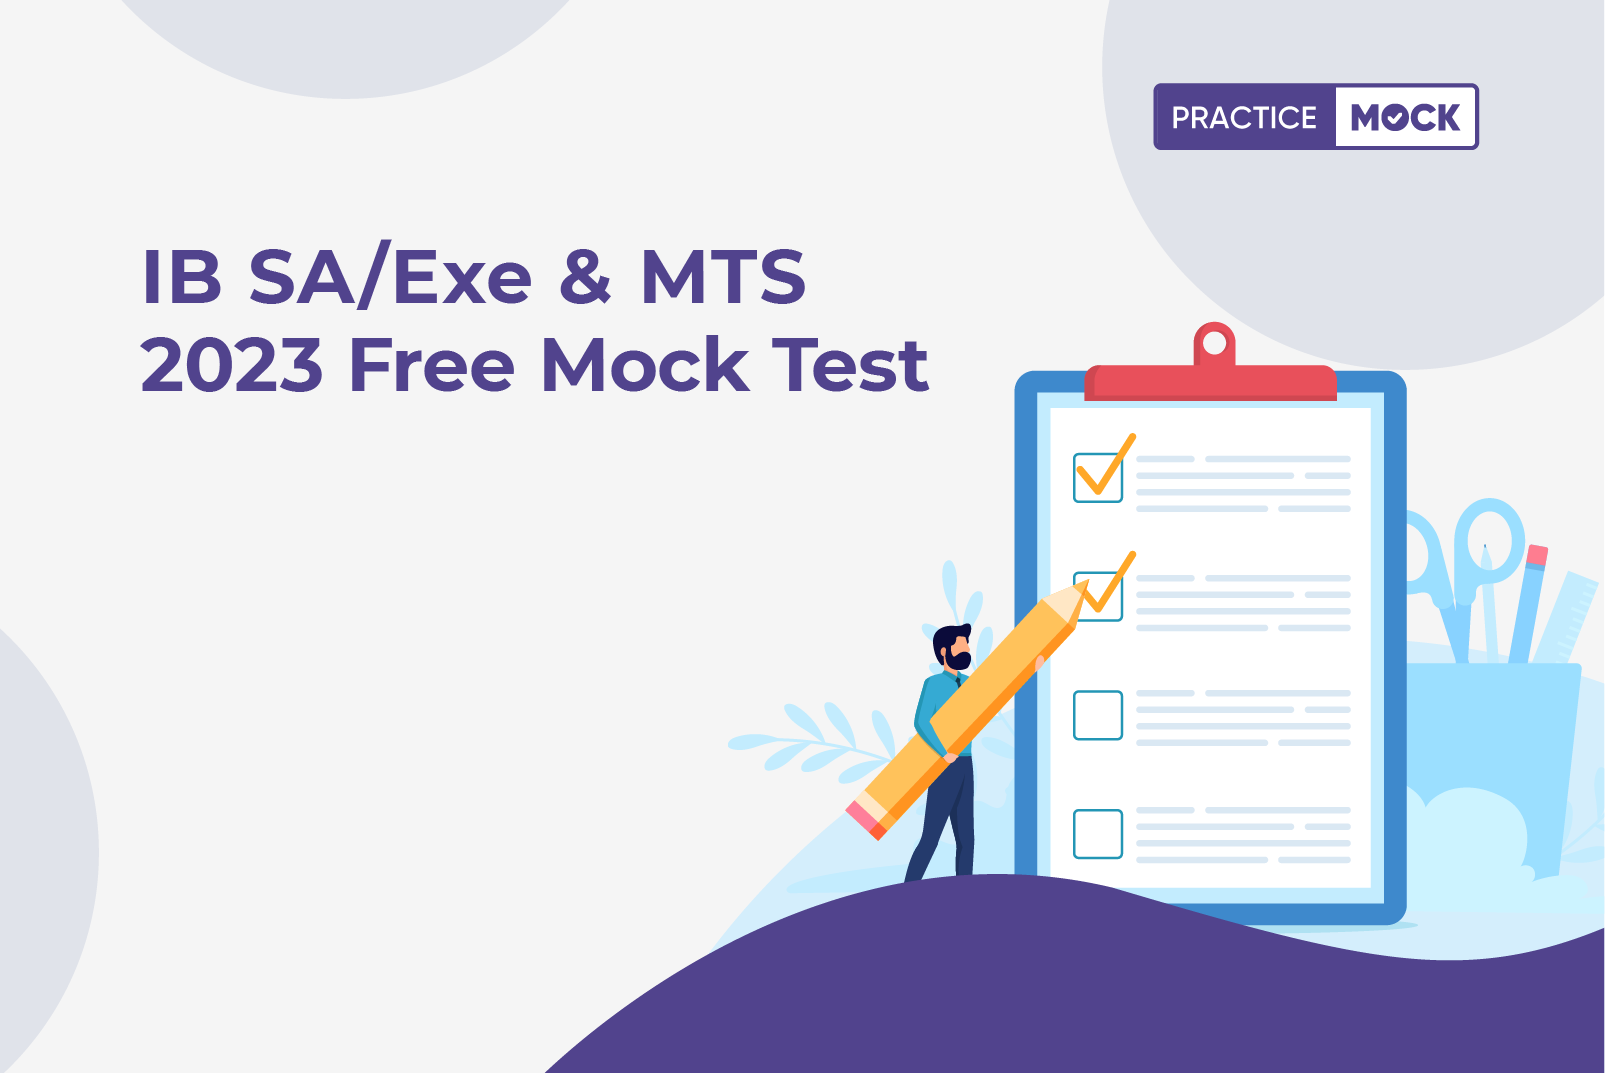 IB SA/Exe & MTS 2023 Free Mock test